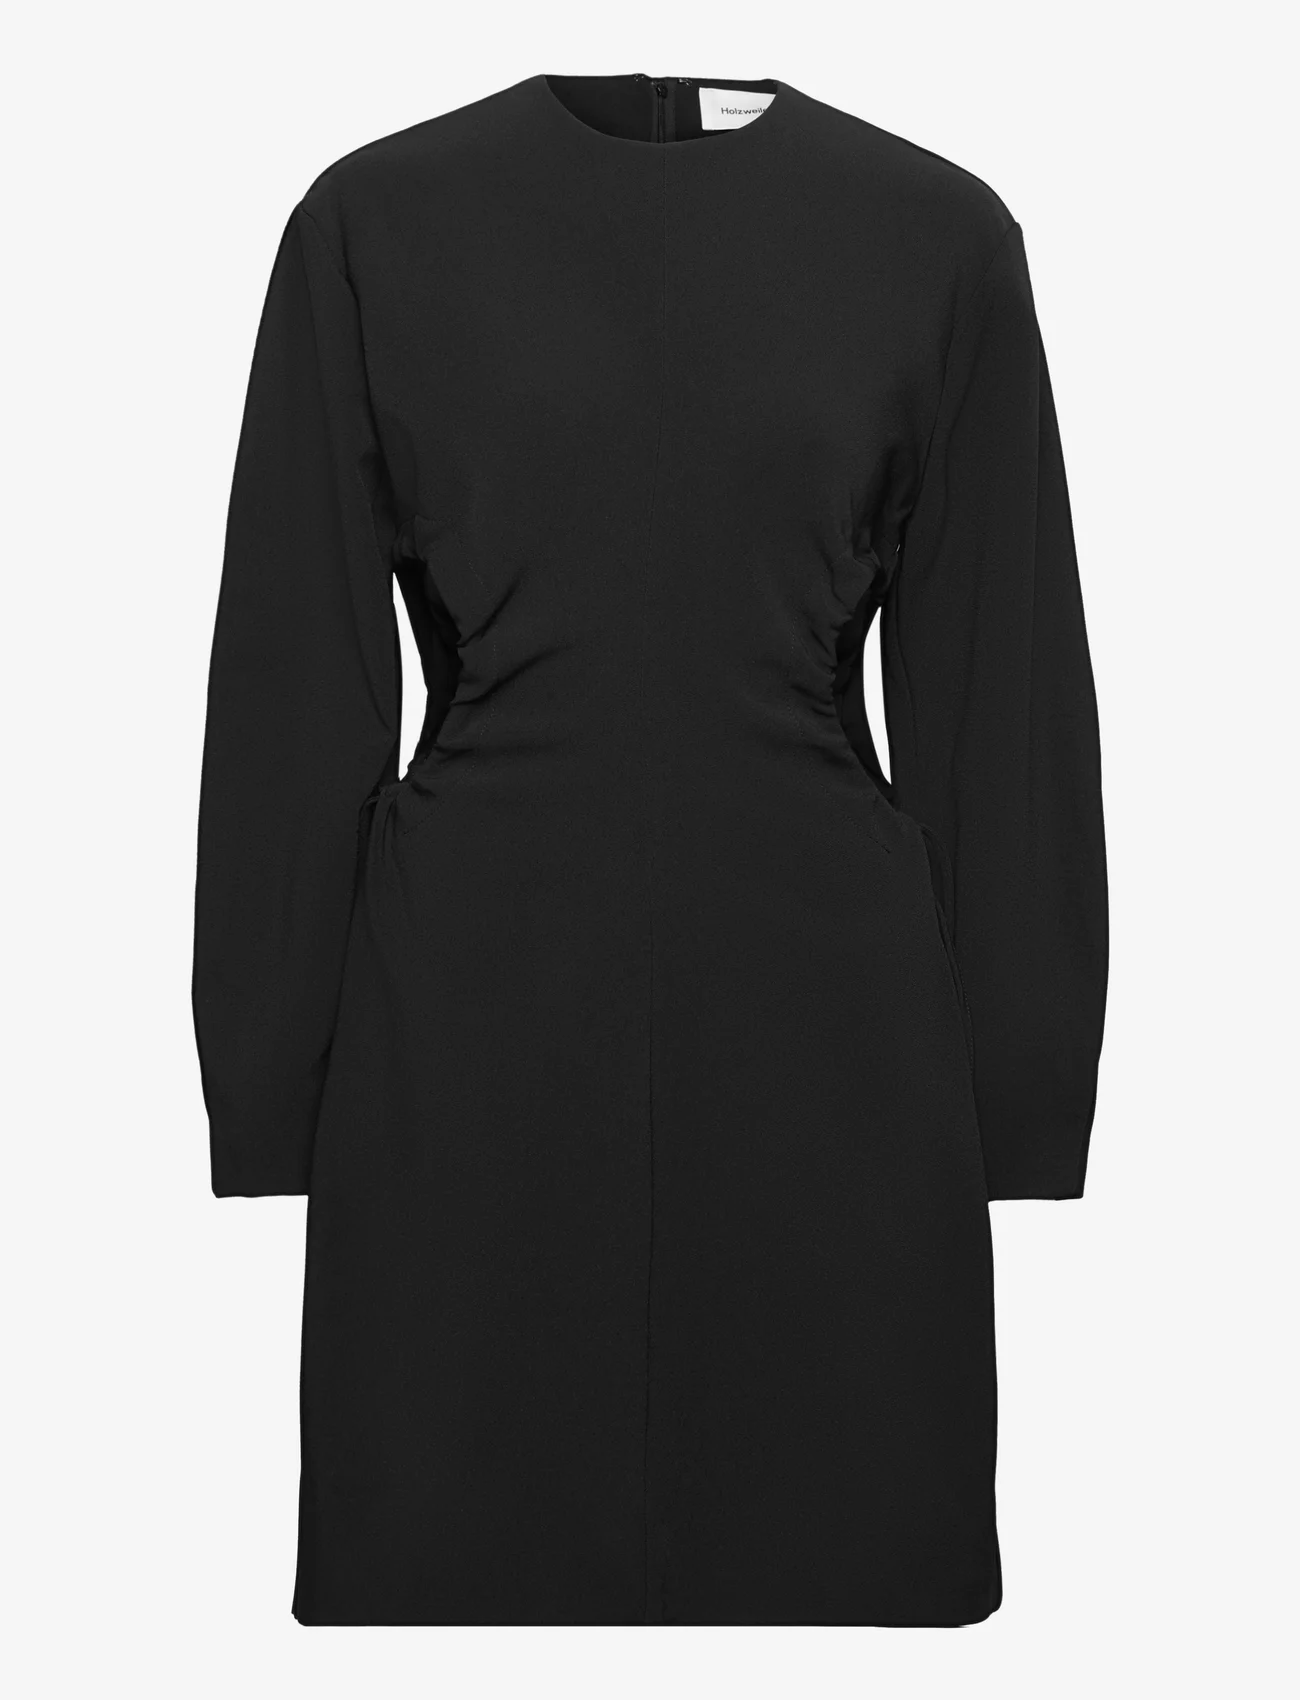 HOLZWEILER - Vision Cut Dress - ballīšu apģērbs par outlet cenām - black - 0